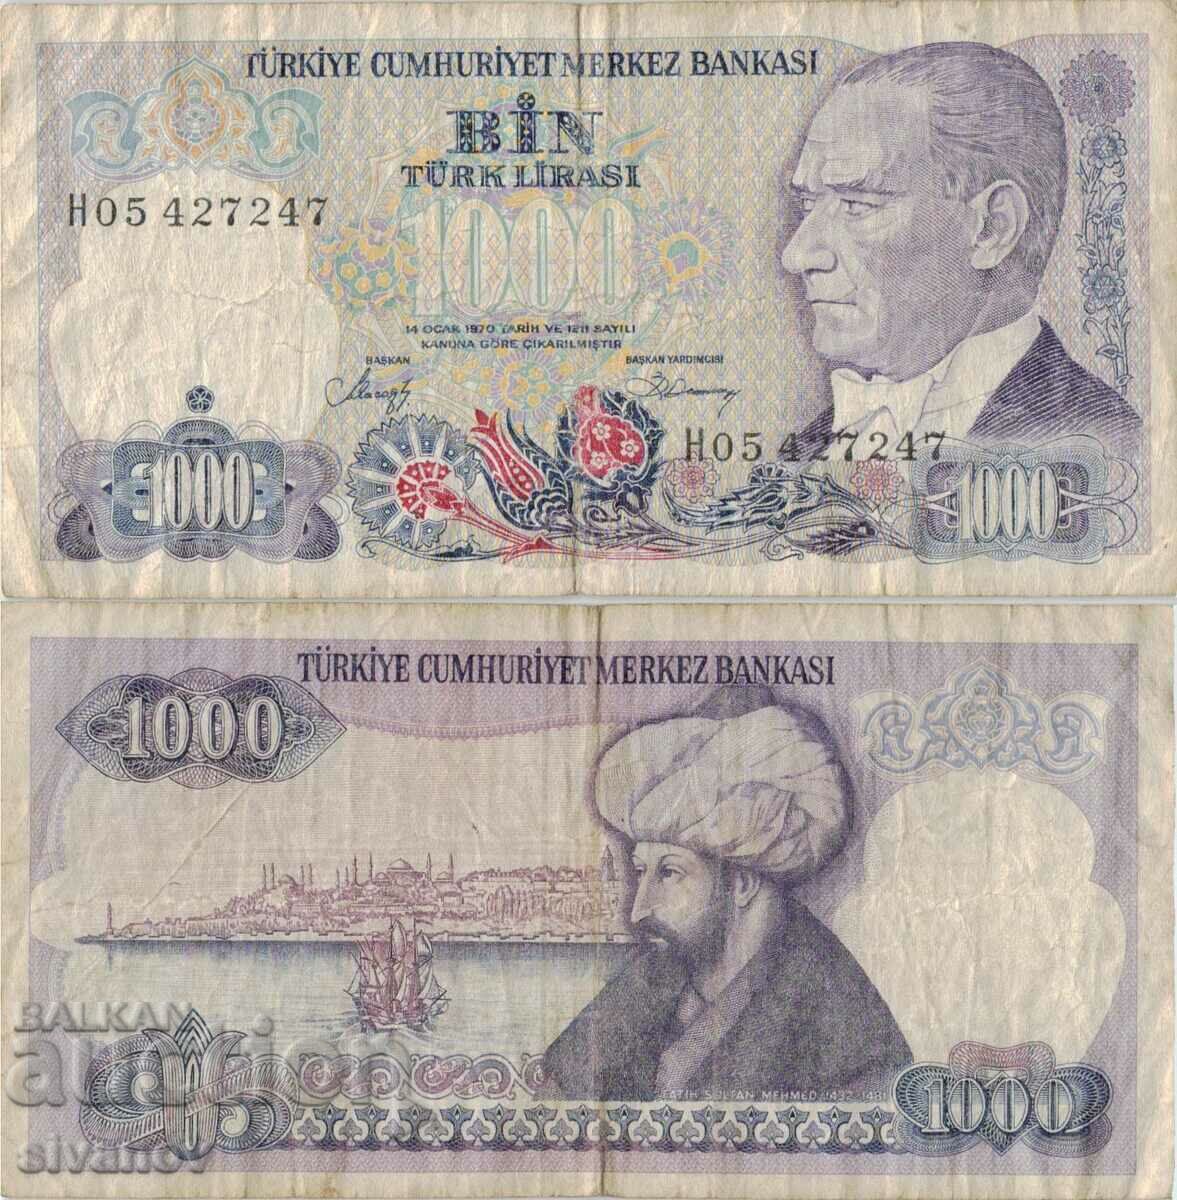 Turkey 1000 lira 1970 (1986) year banknote #5184